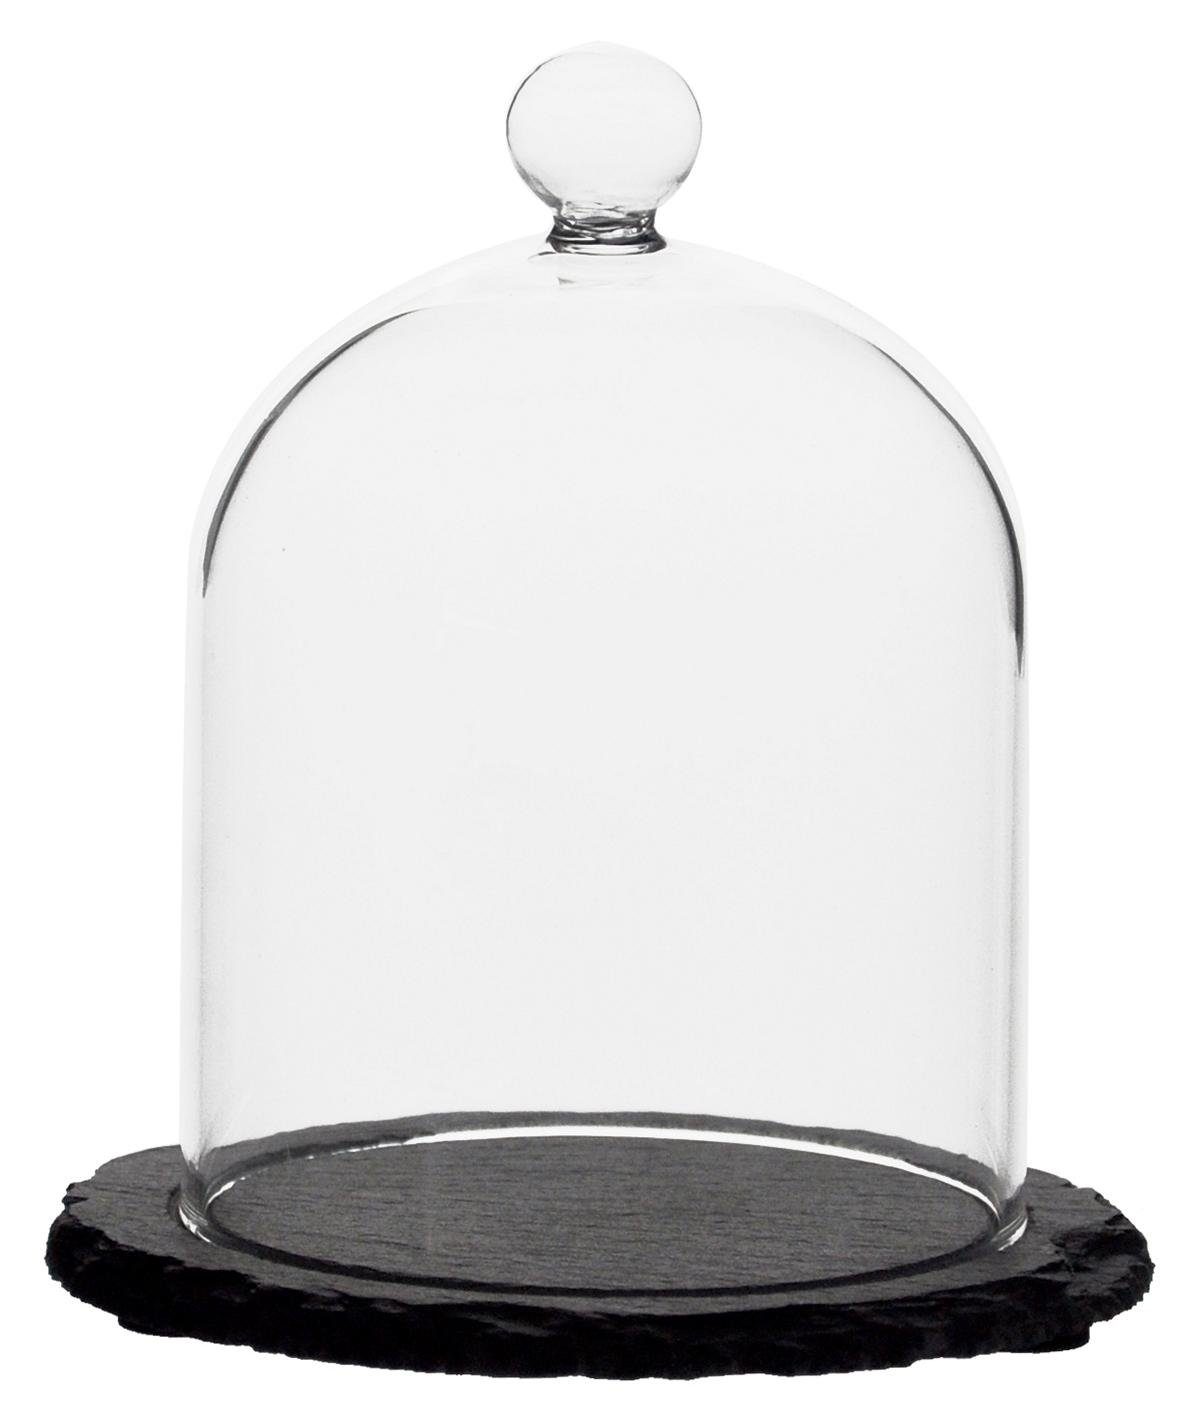 Sendez Tortenglocke Glaskuppel Glasglocke Schieferplatte Glashaube Glocke auf Glasdom 10x13,5cm